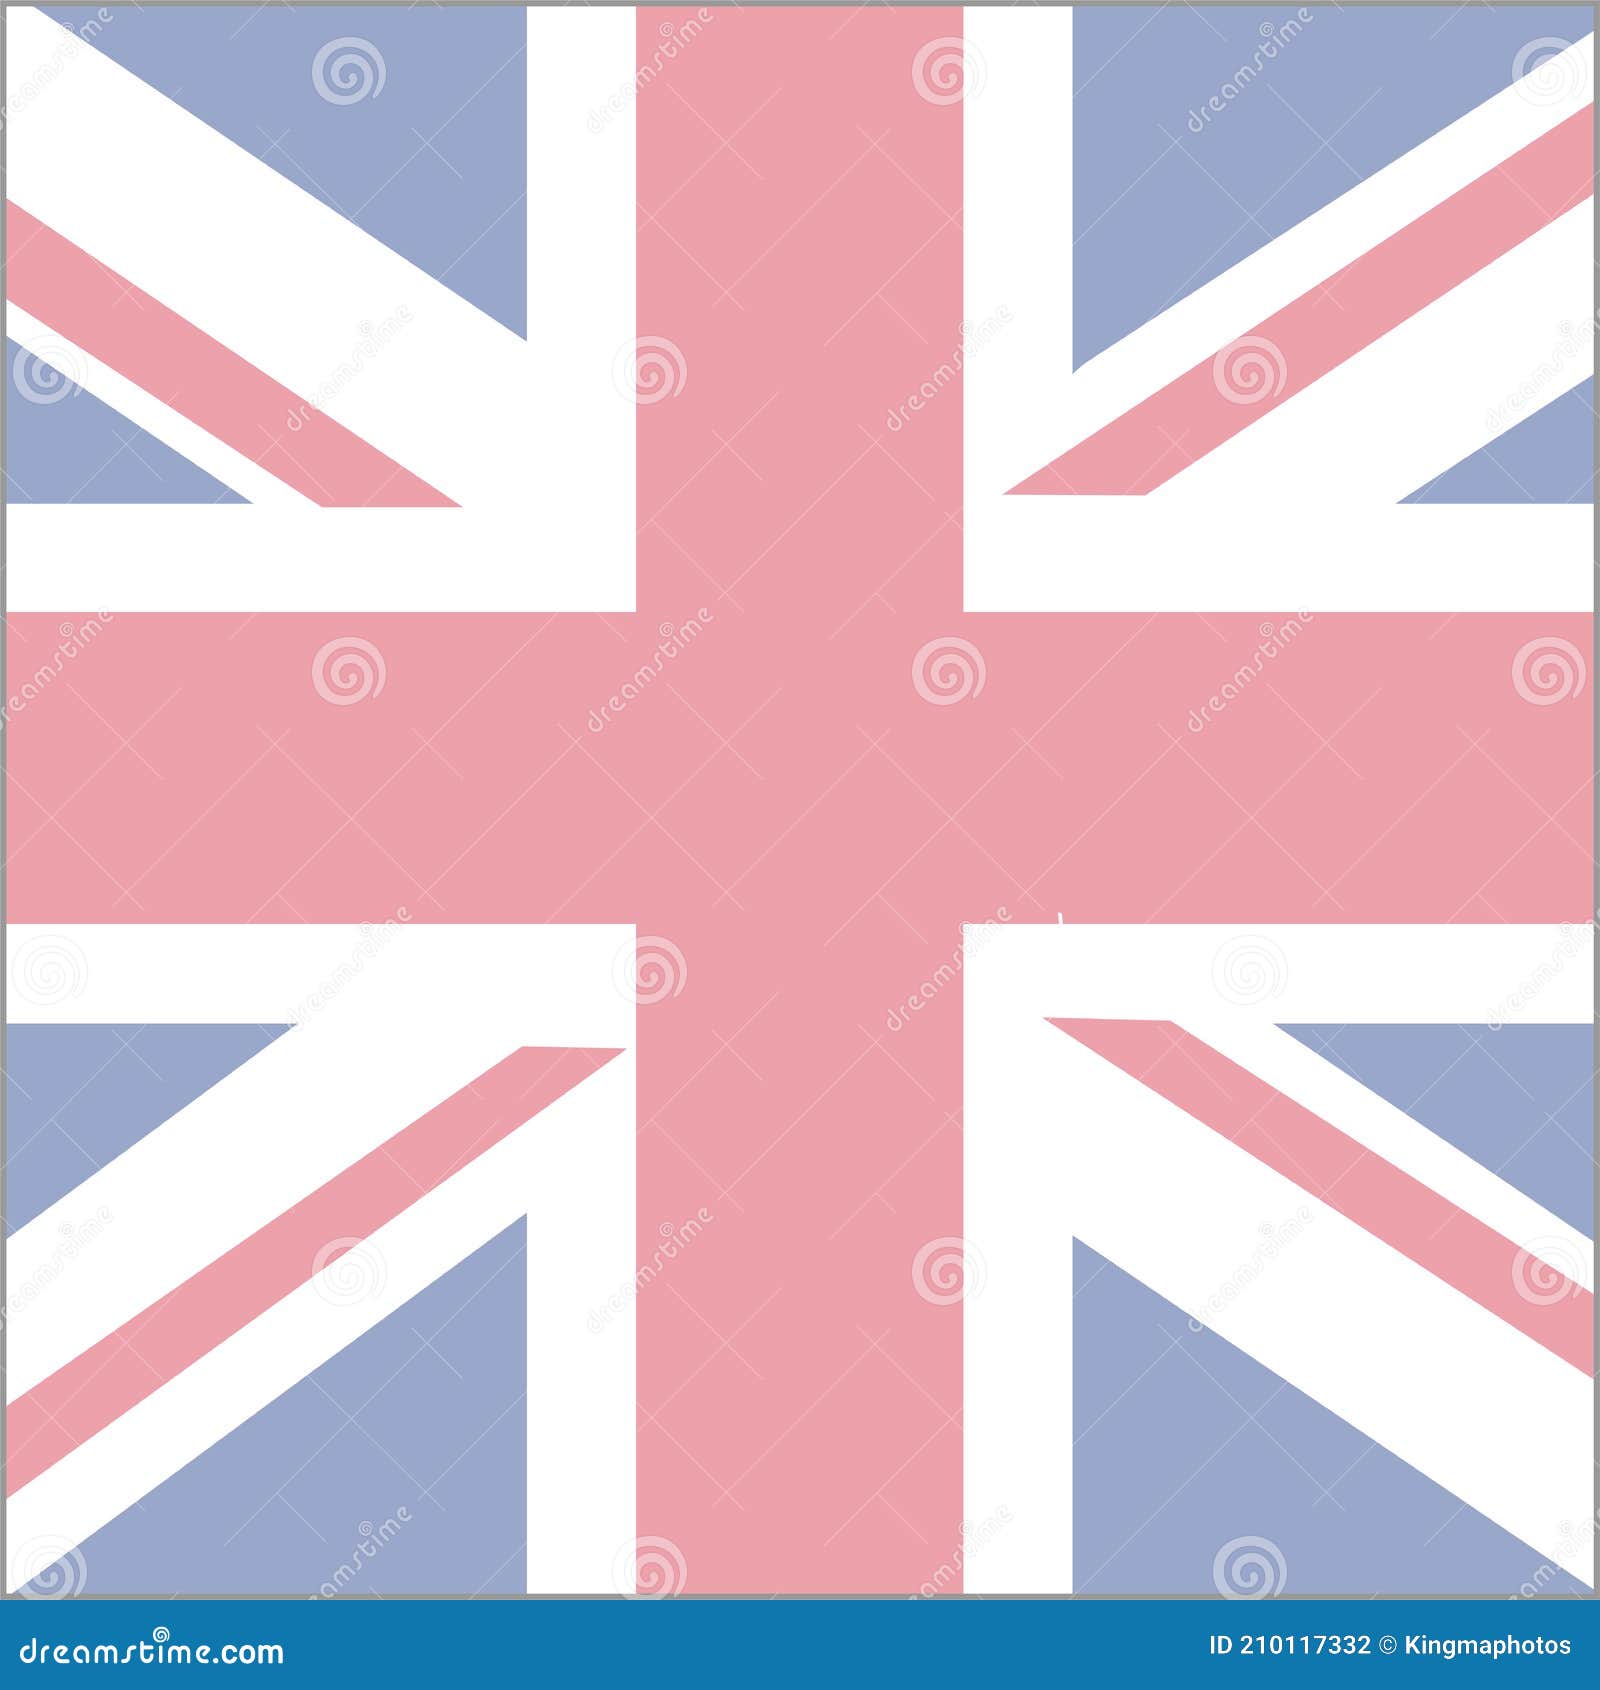 Khi nhìn vào biểu tượng cờ Anh, ta sẽ nhớ đến vẻ đẹp tự do, uy quyền và sự lịch lãm của nước Anh. Đó là một hình ảnh vô cùng ý nghĩa trong cuộc sống hàng ngày cũng như trong không khí đầy cảm hứng của bạn.